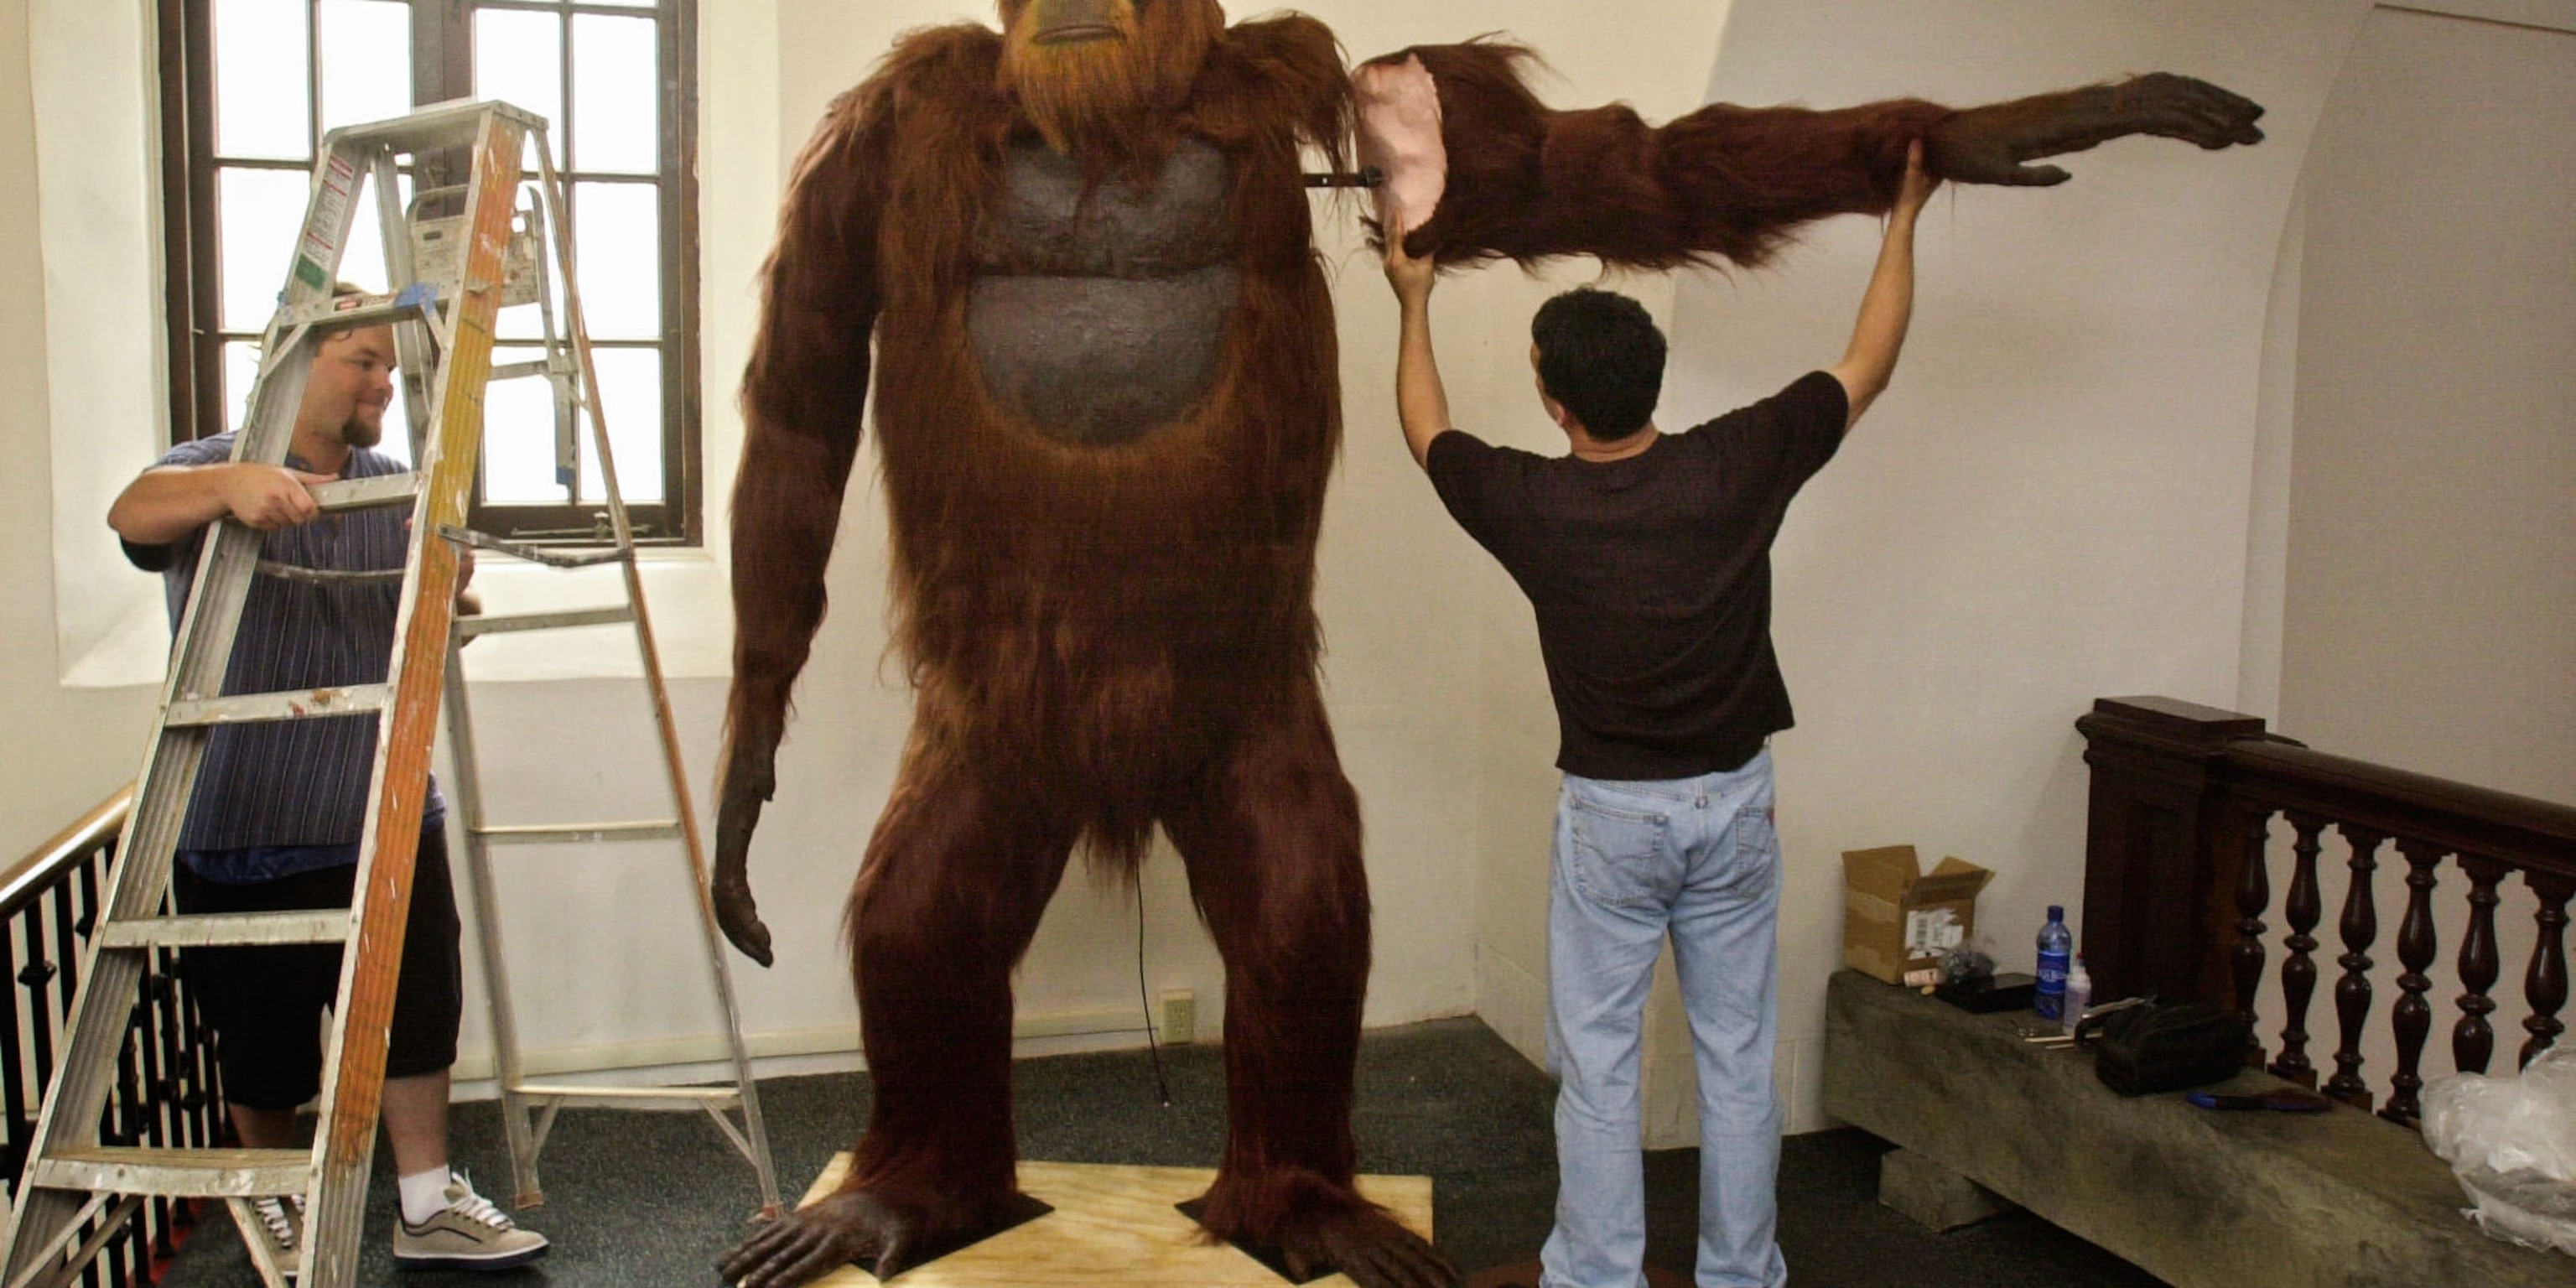 How big can a Gigantopithecus get?